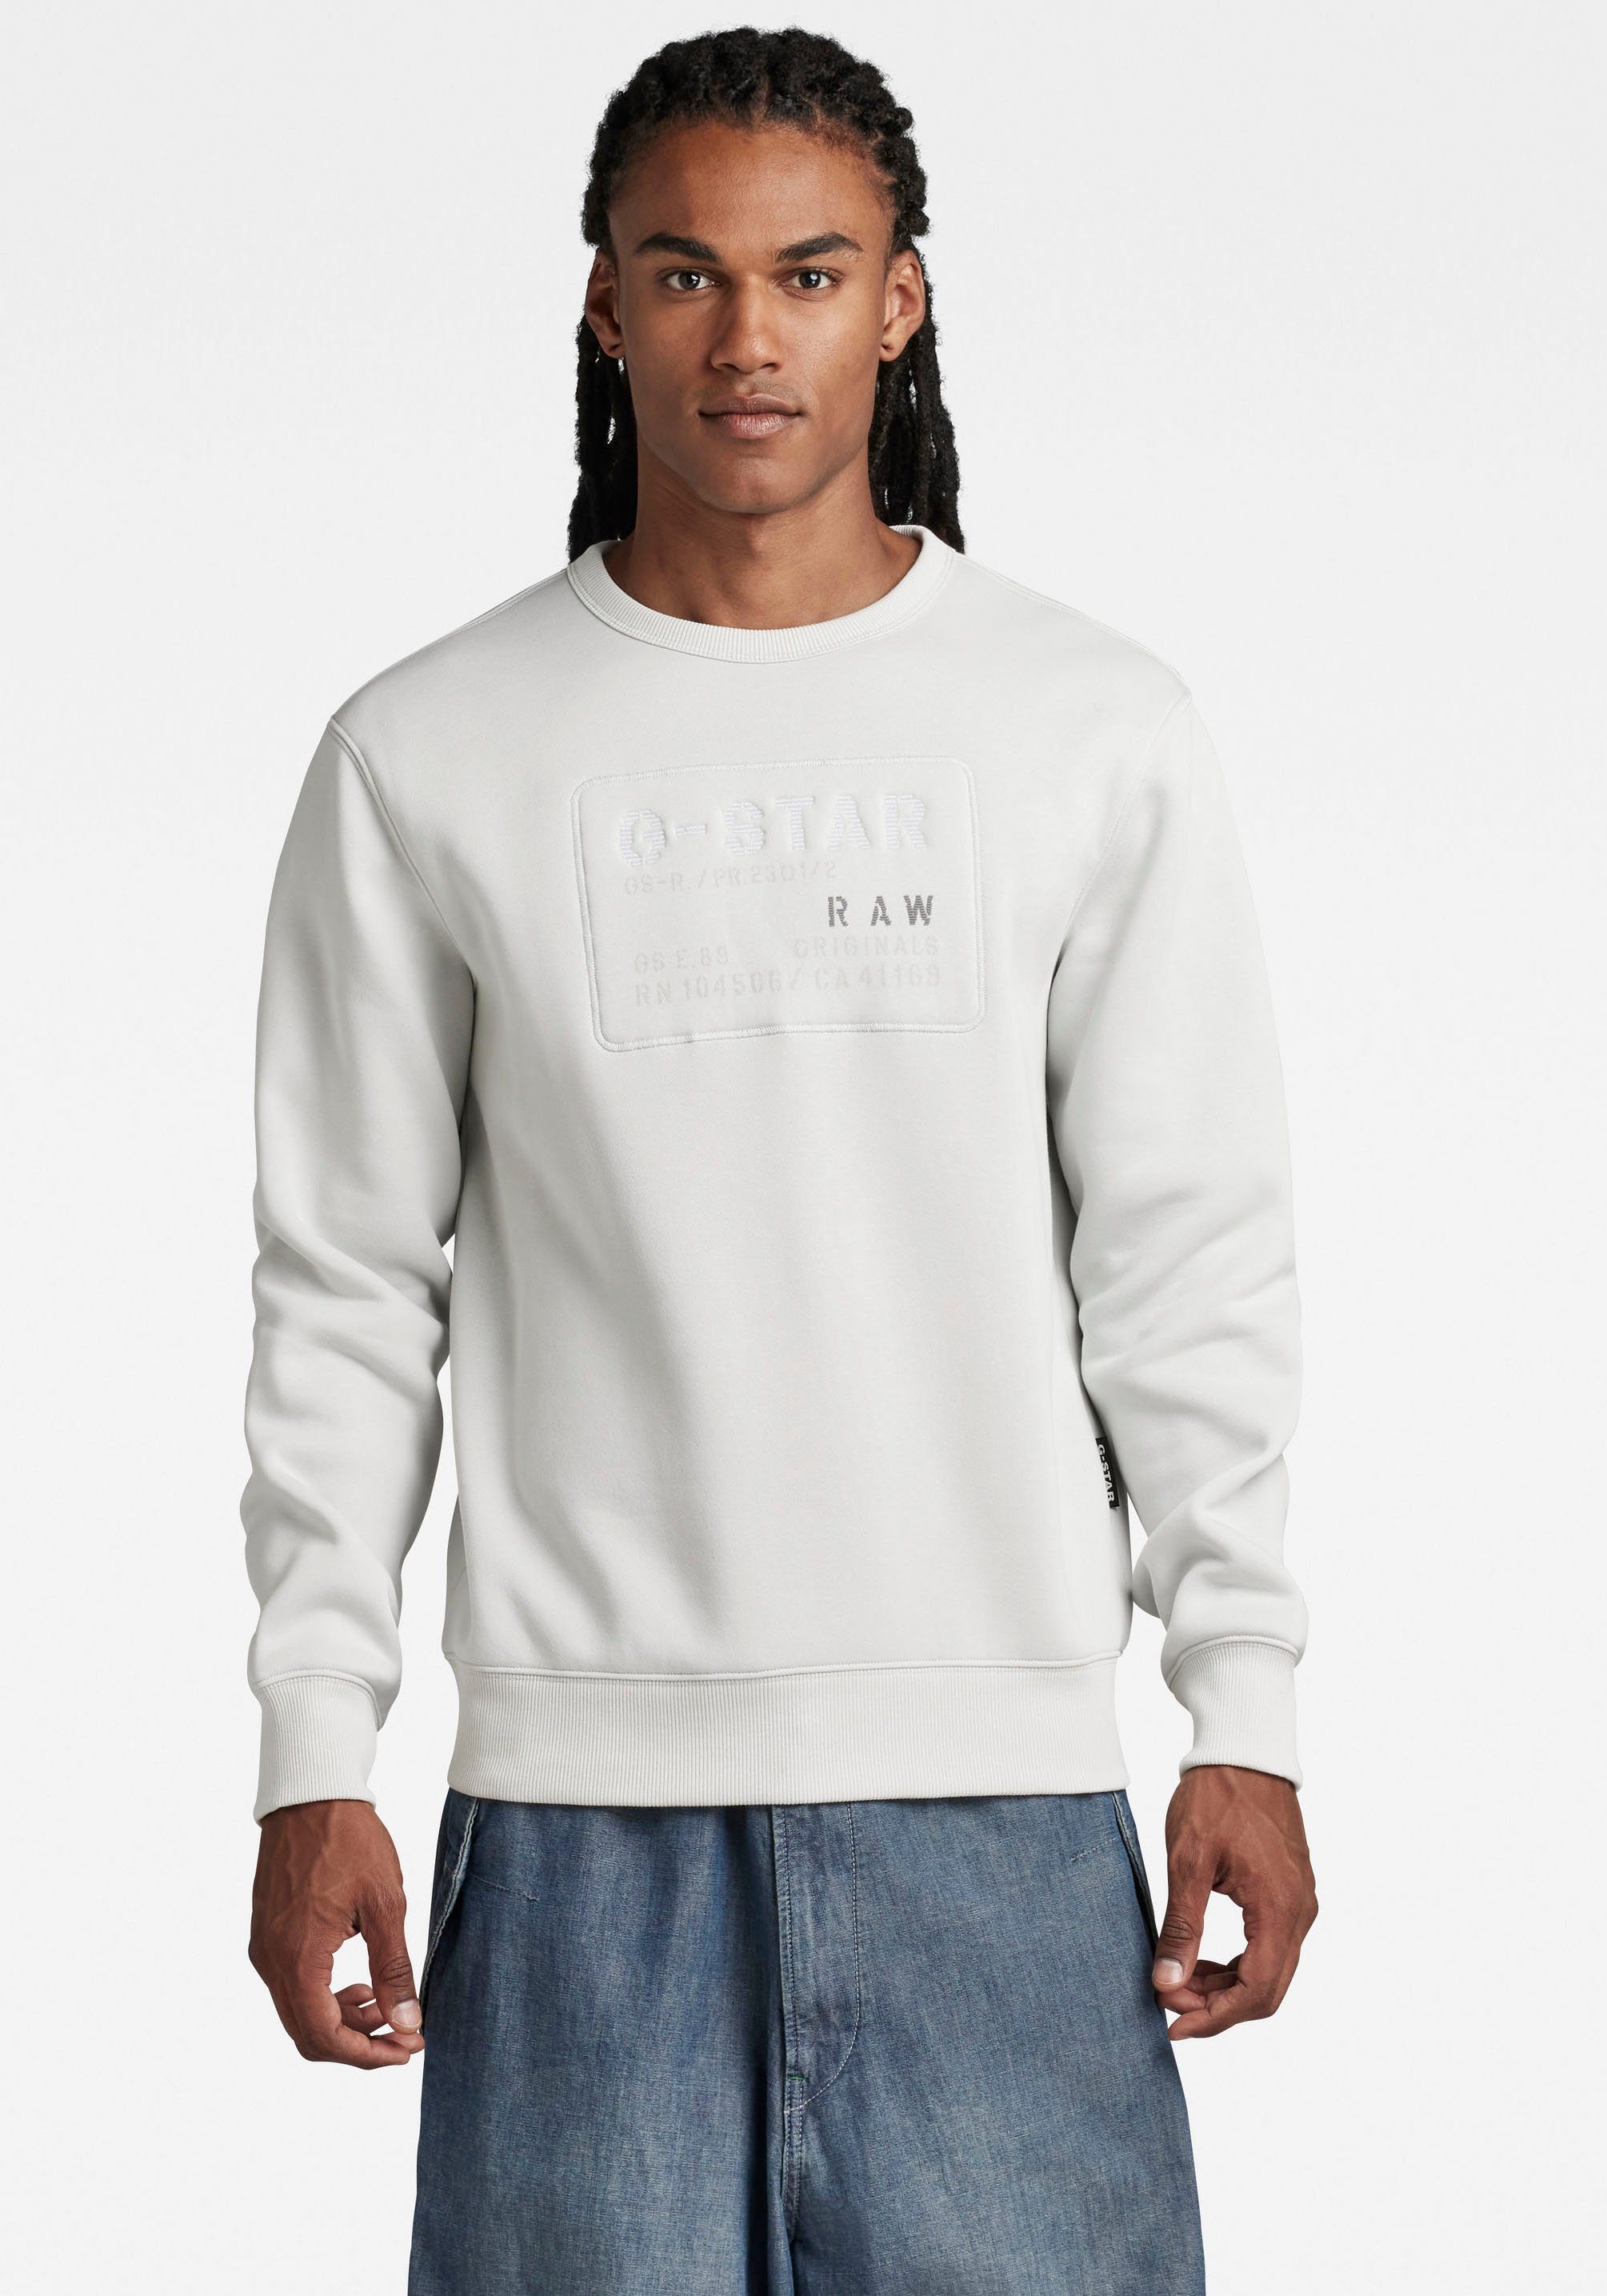 Regulärer Rabatt RAW Originals Sweatshirt G-Star mushroom Oyster Sweatshirt